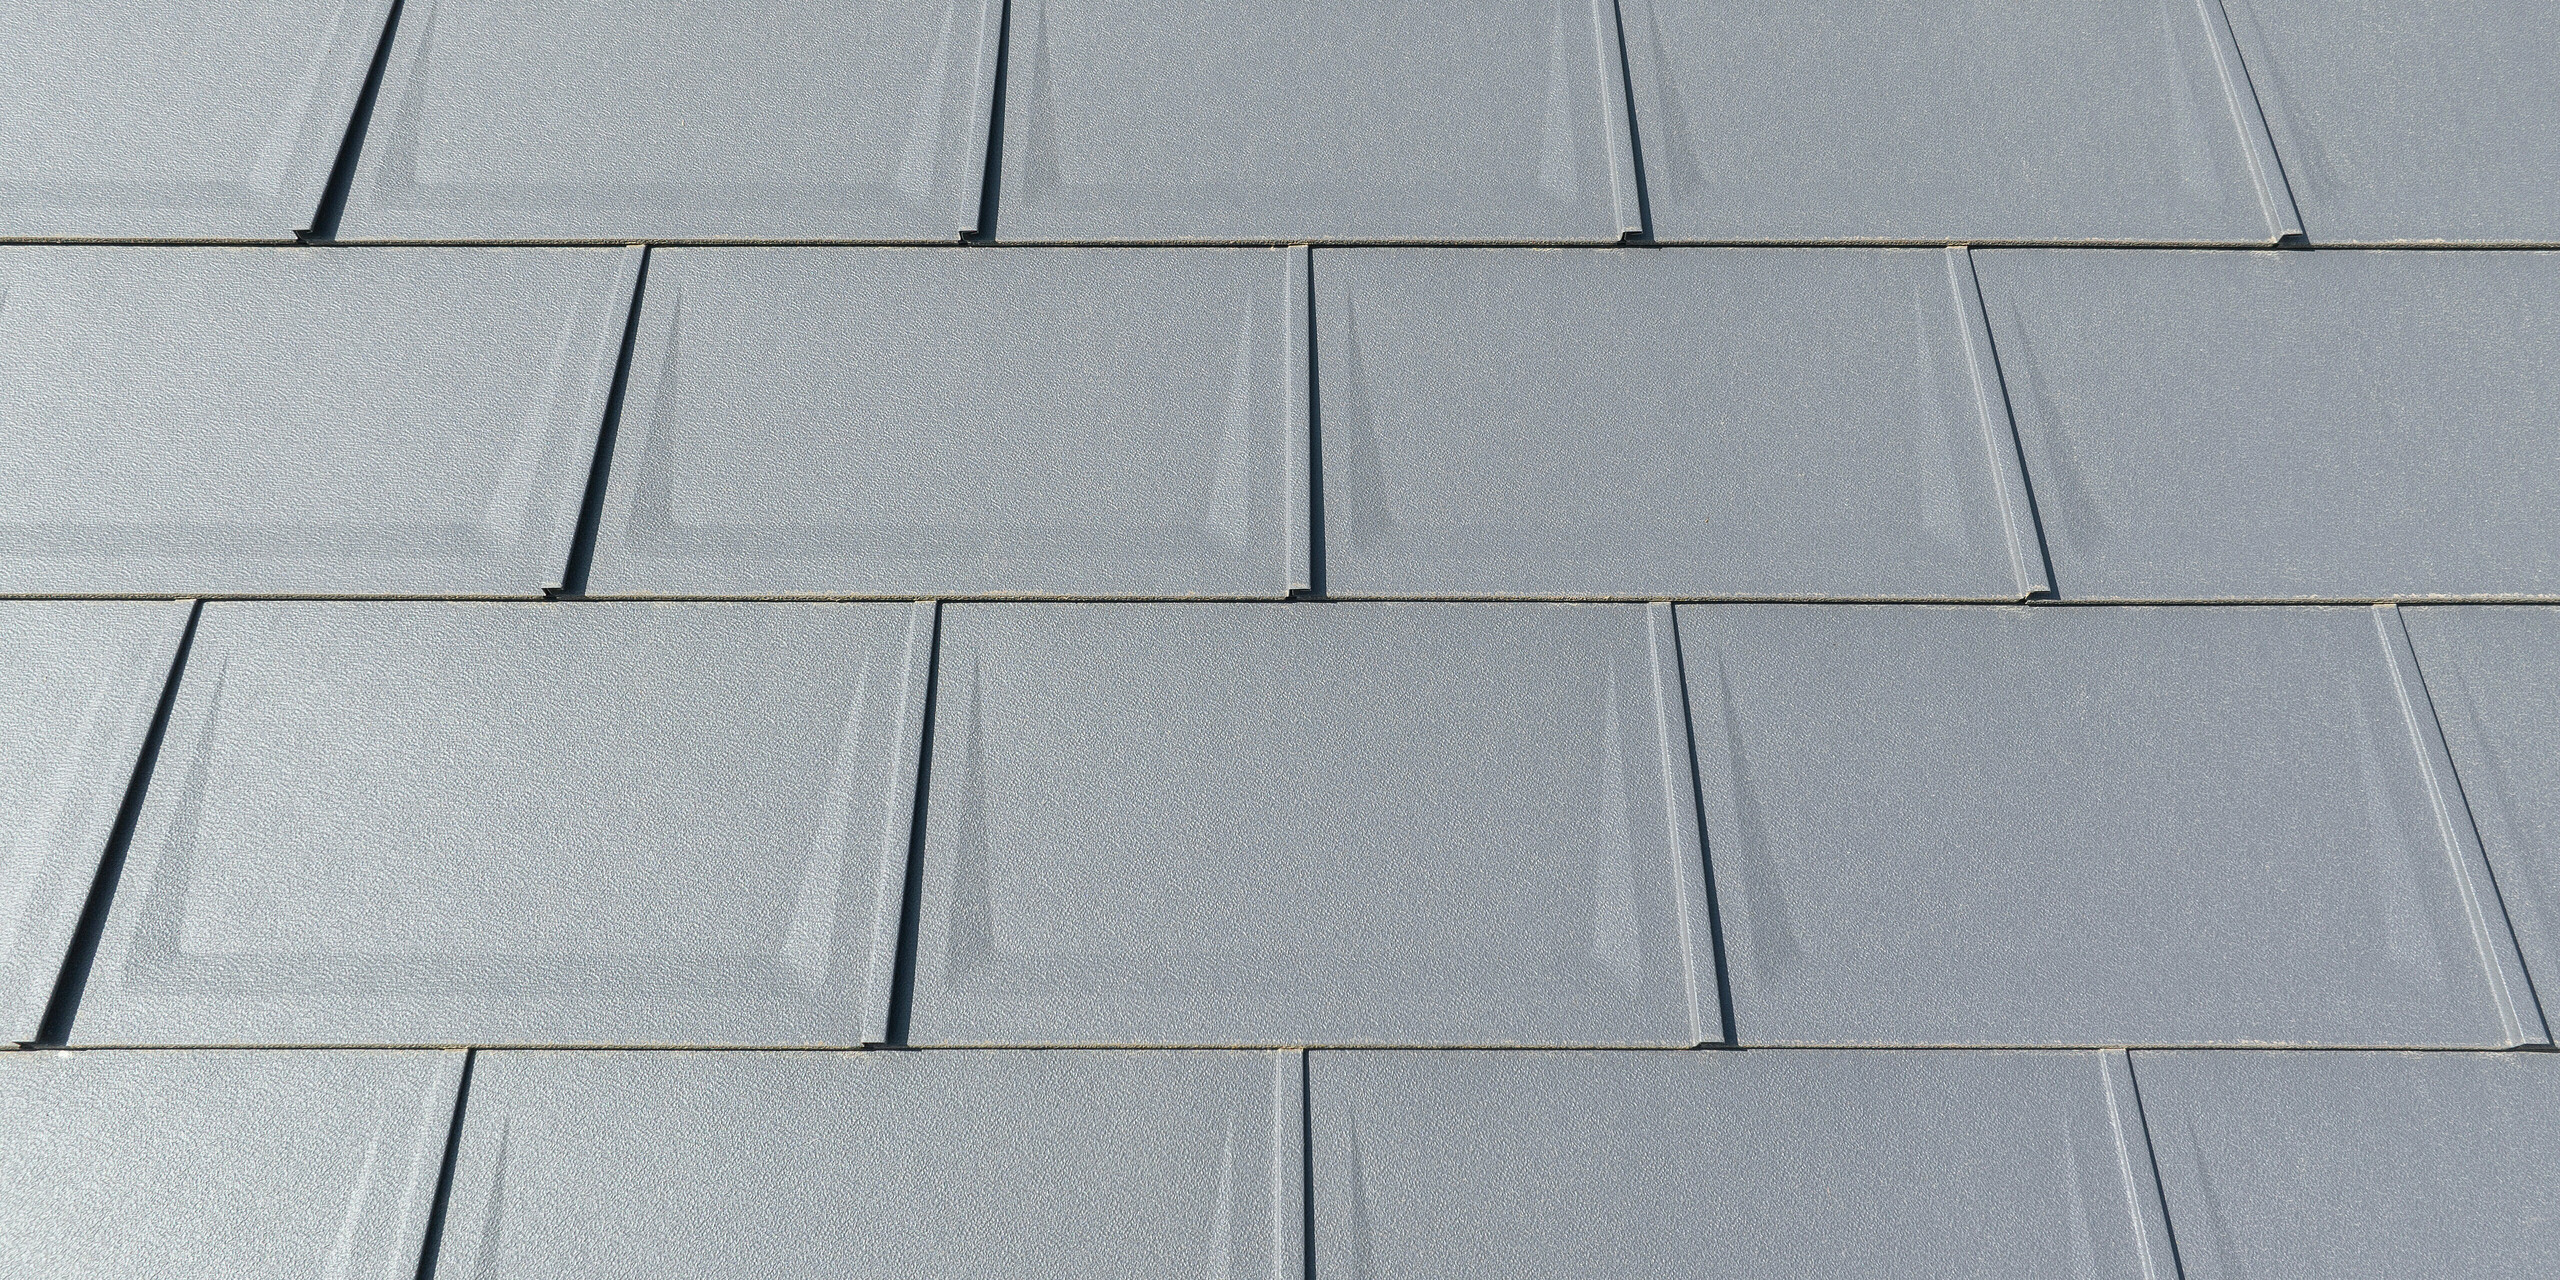 Pohled zblízka na střešní panel R.16 v barvě P.10 tmavě šedé v povrchové úpravě stucco namontovaný v pravidelných řadách